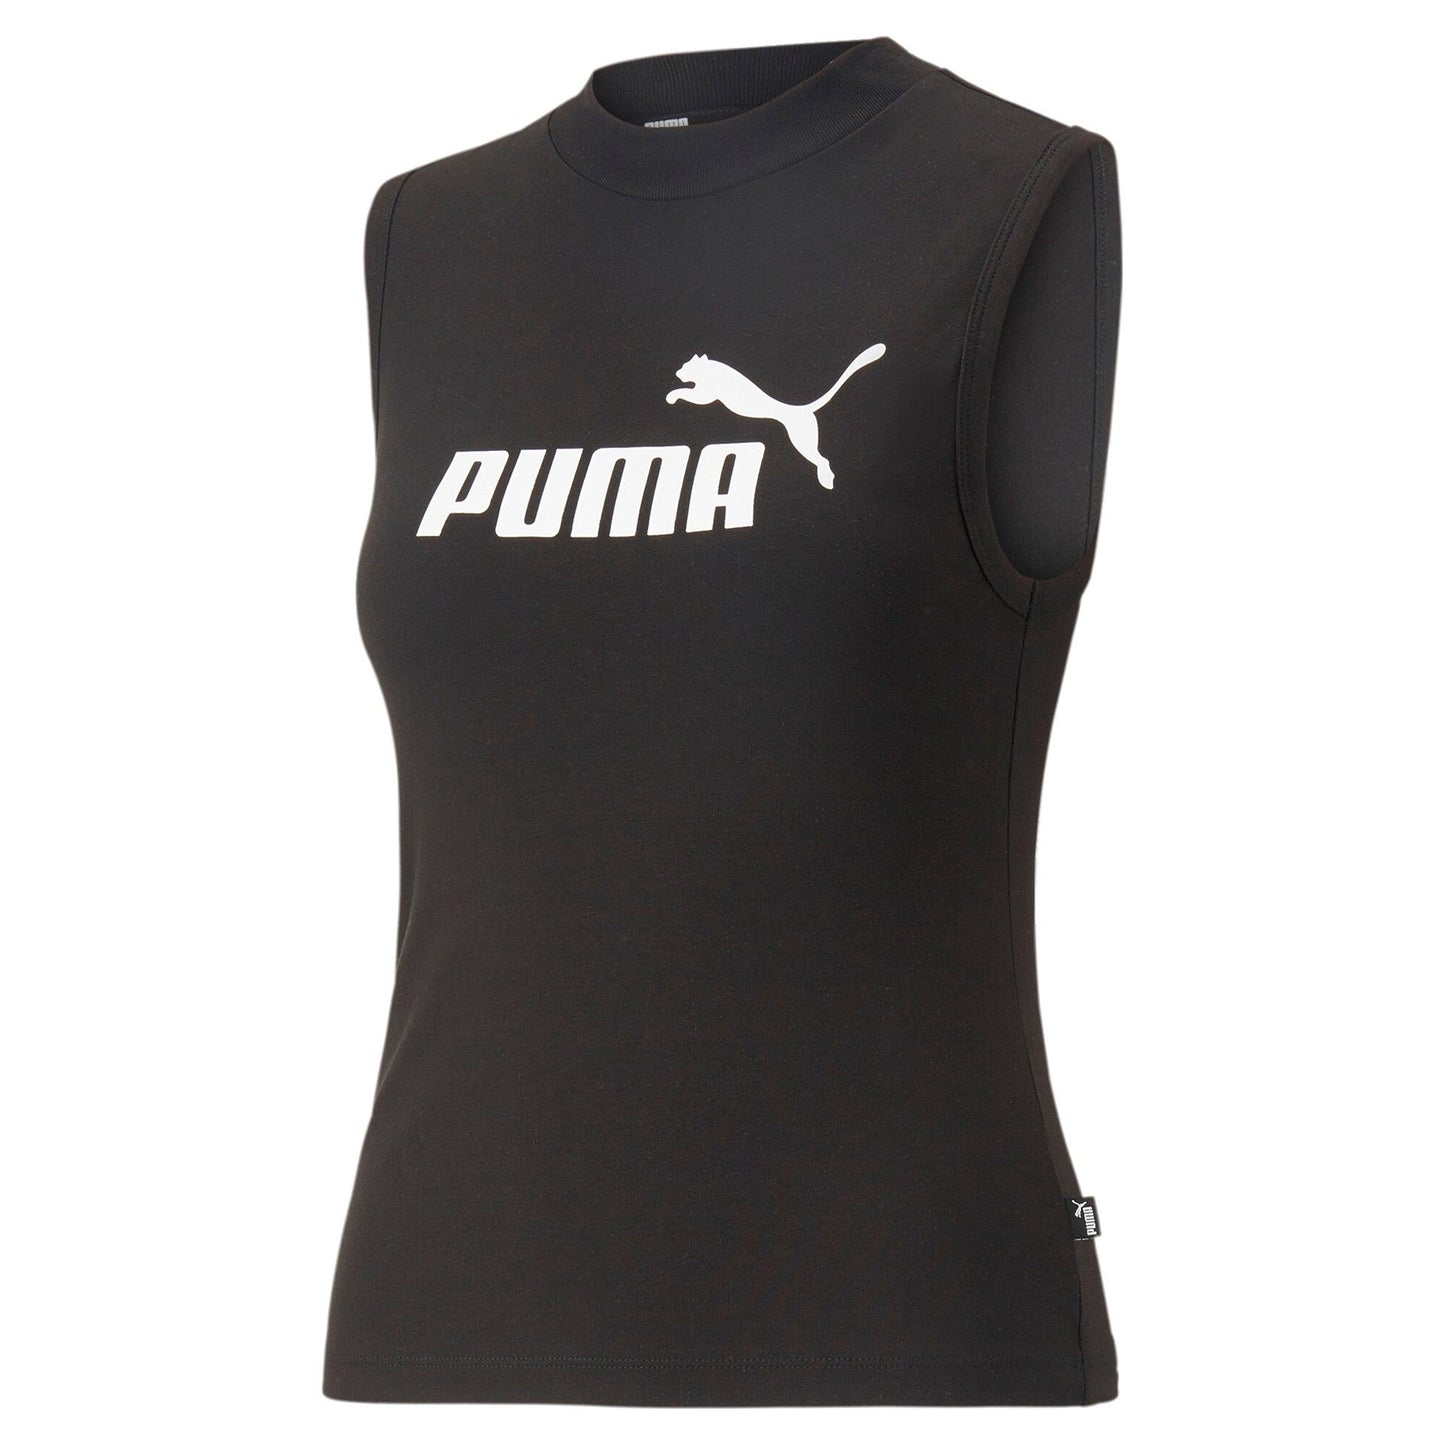 Camiseta tirantes mujer Puma ESS SLIM LOGO TANK negro